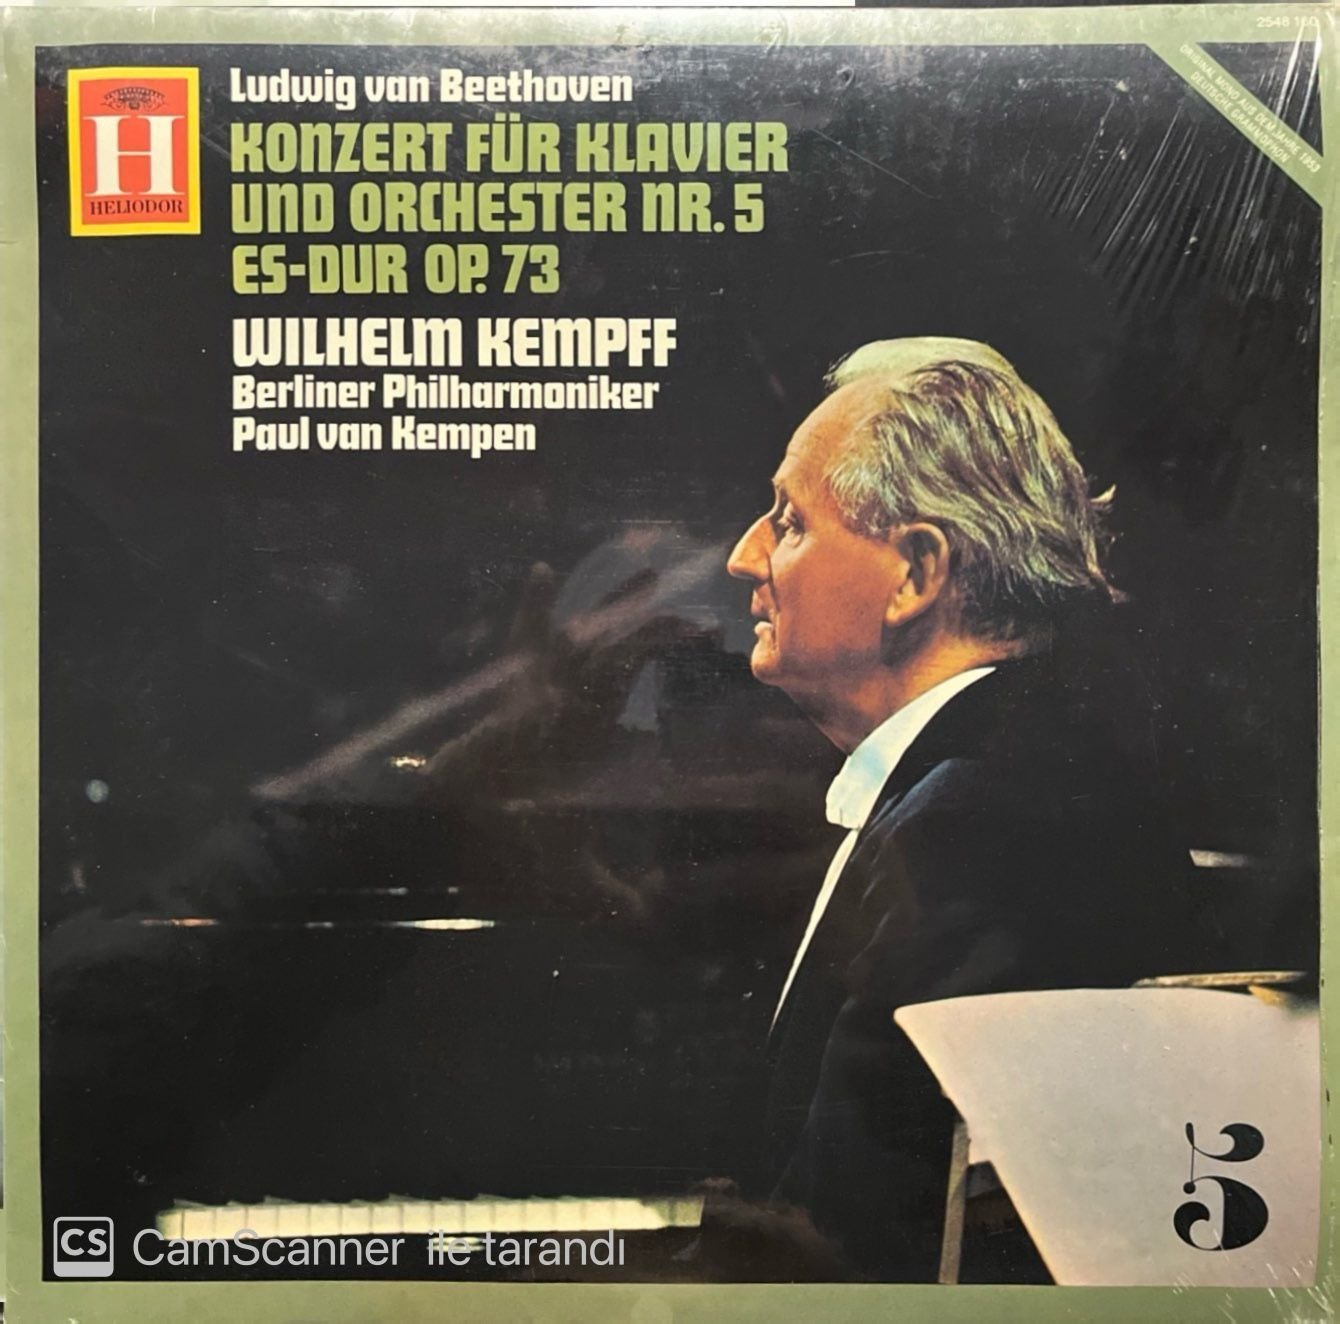 Wilhelm Kempff Ludwig Van Beethoven Konzert Für Klavier LP Plak